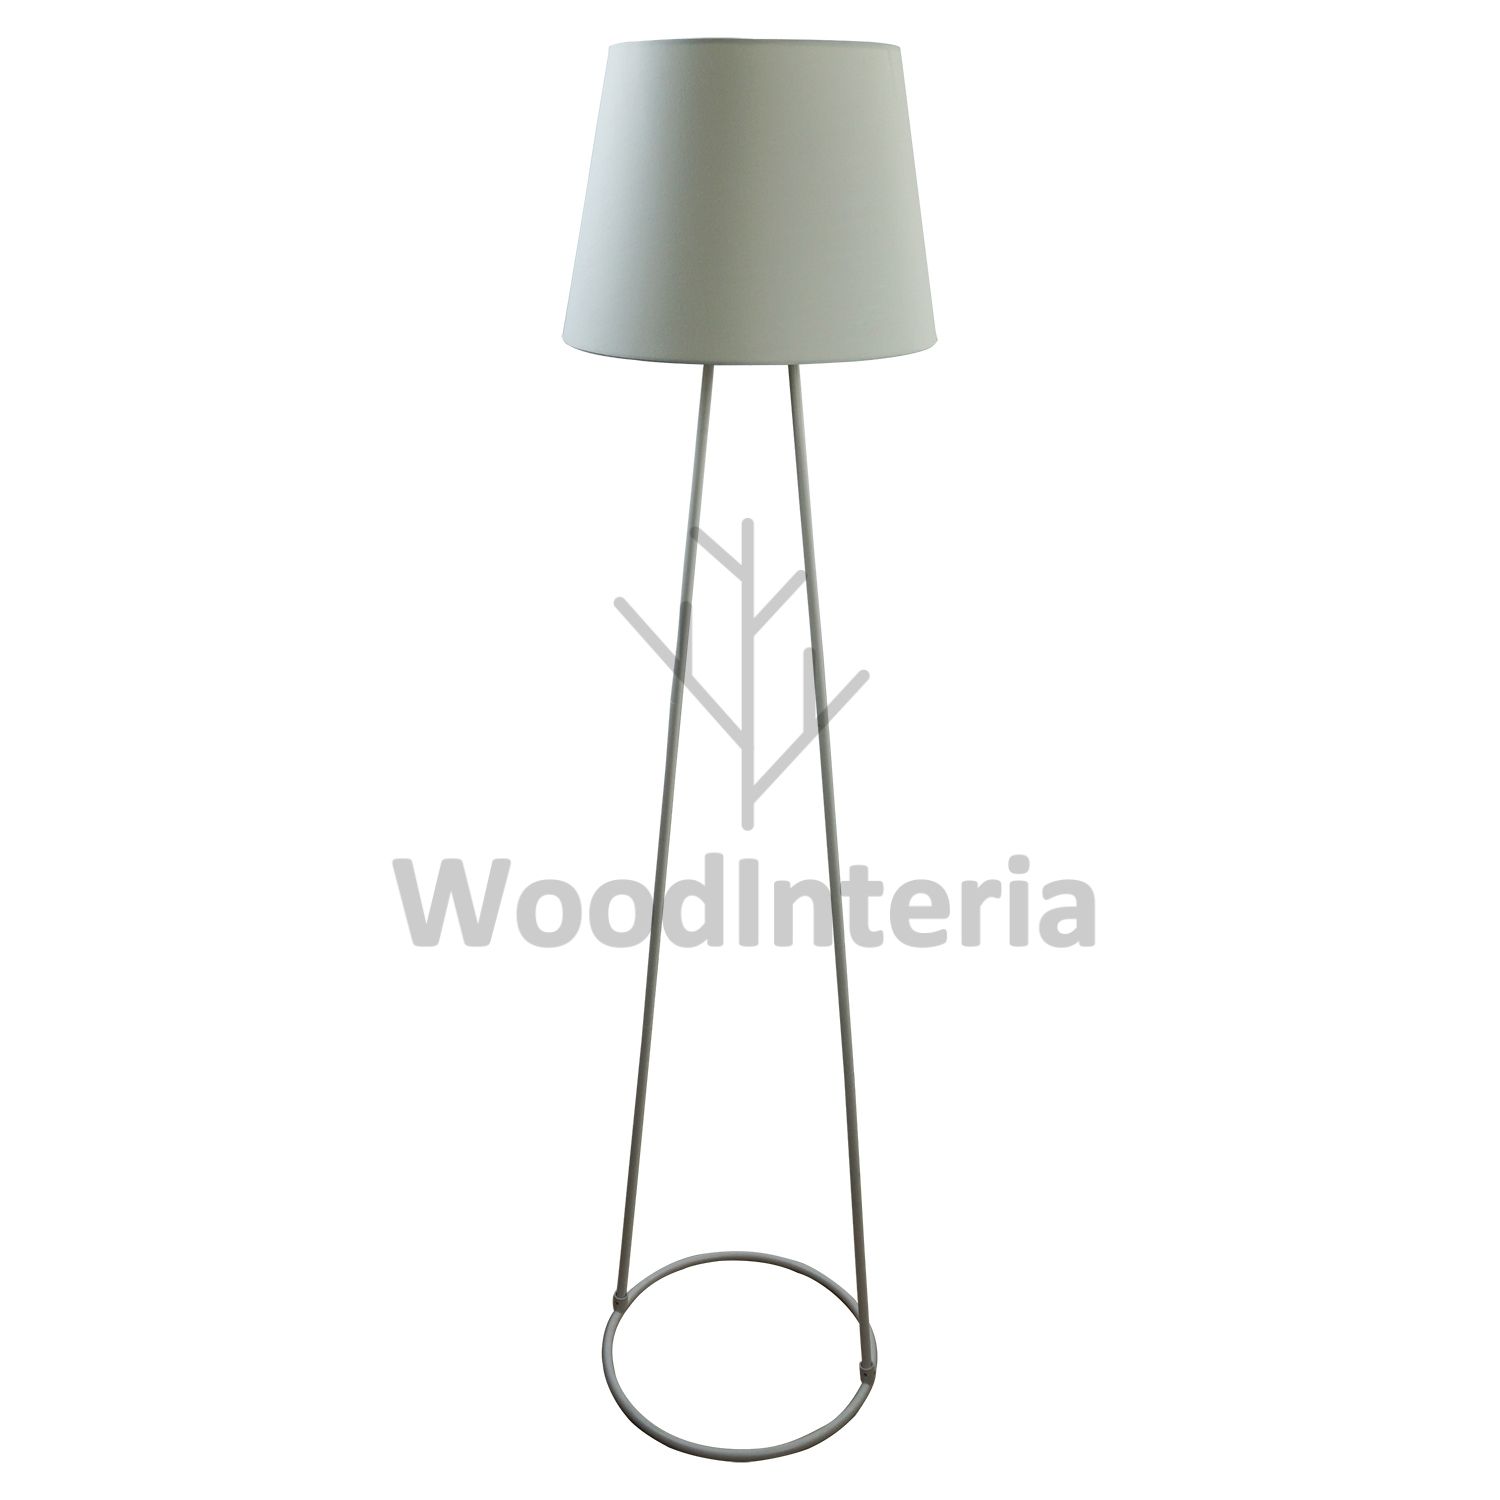 фото напольная лампа circles & curves floor white в скандинавском интерьере лофт эко | WoodInteria